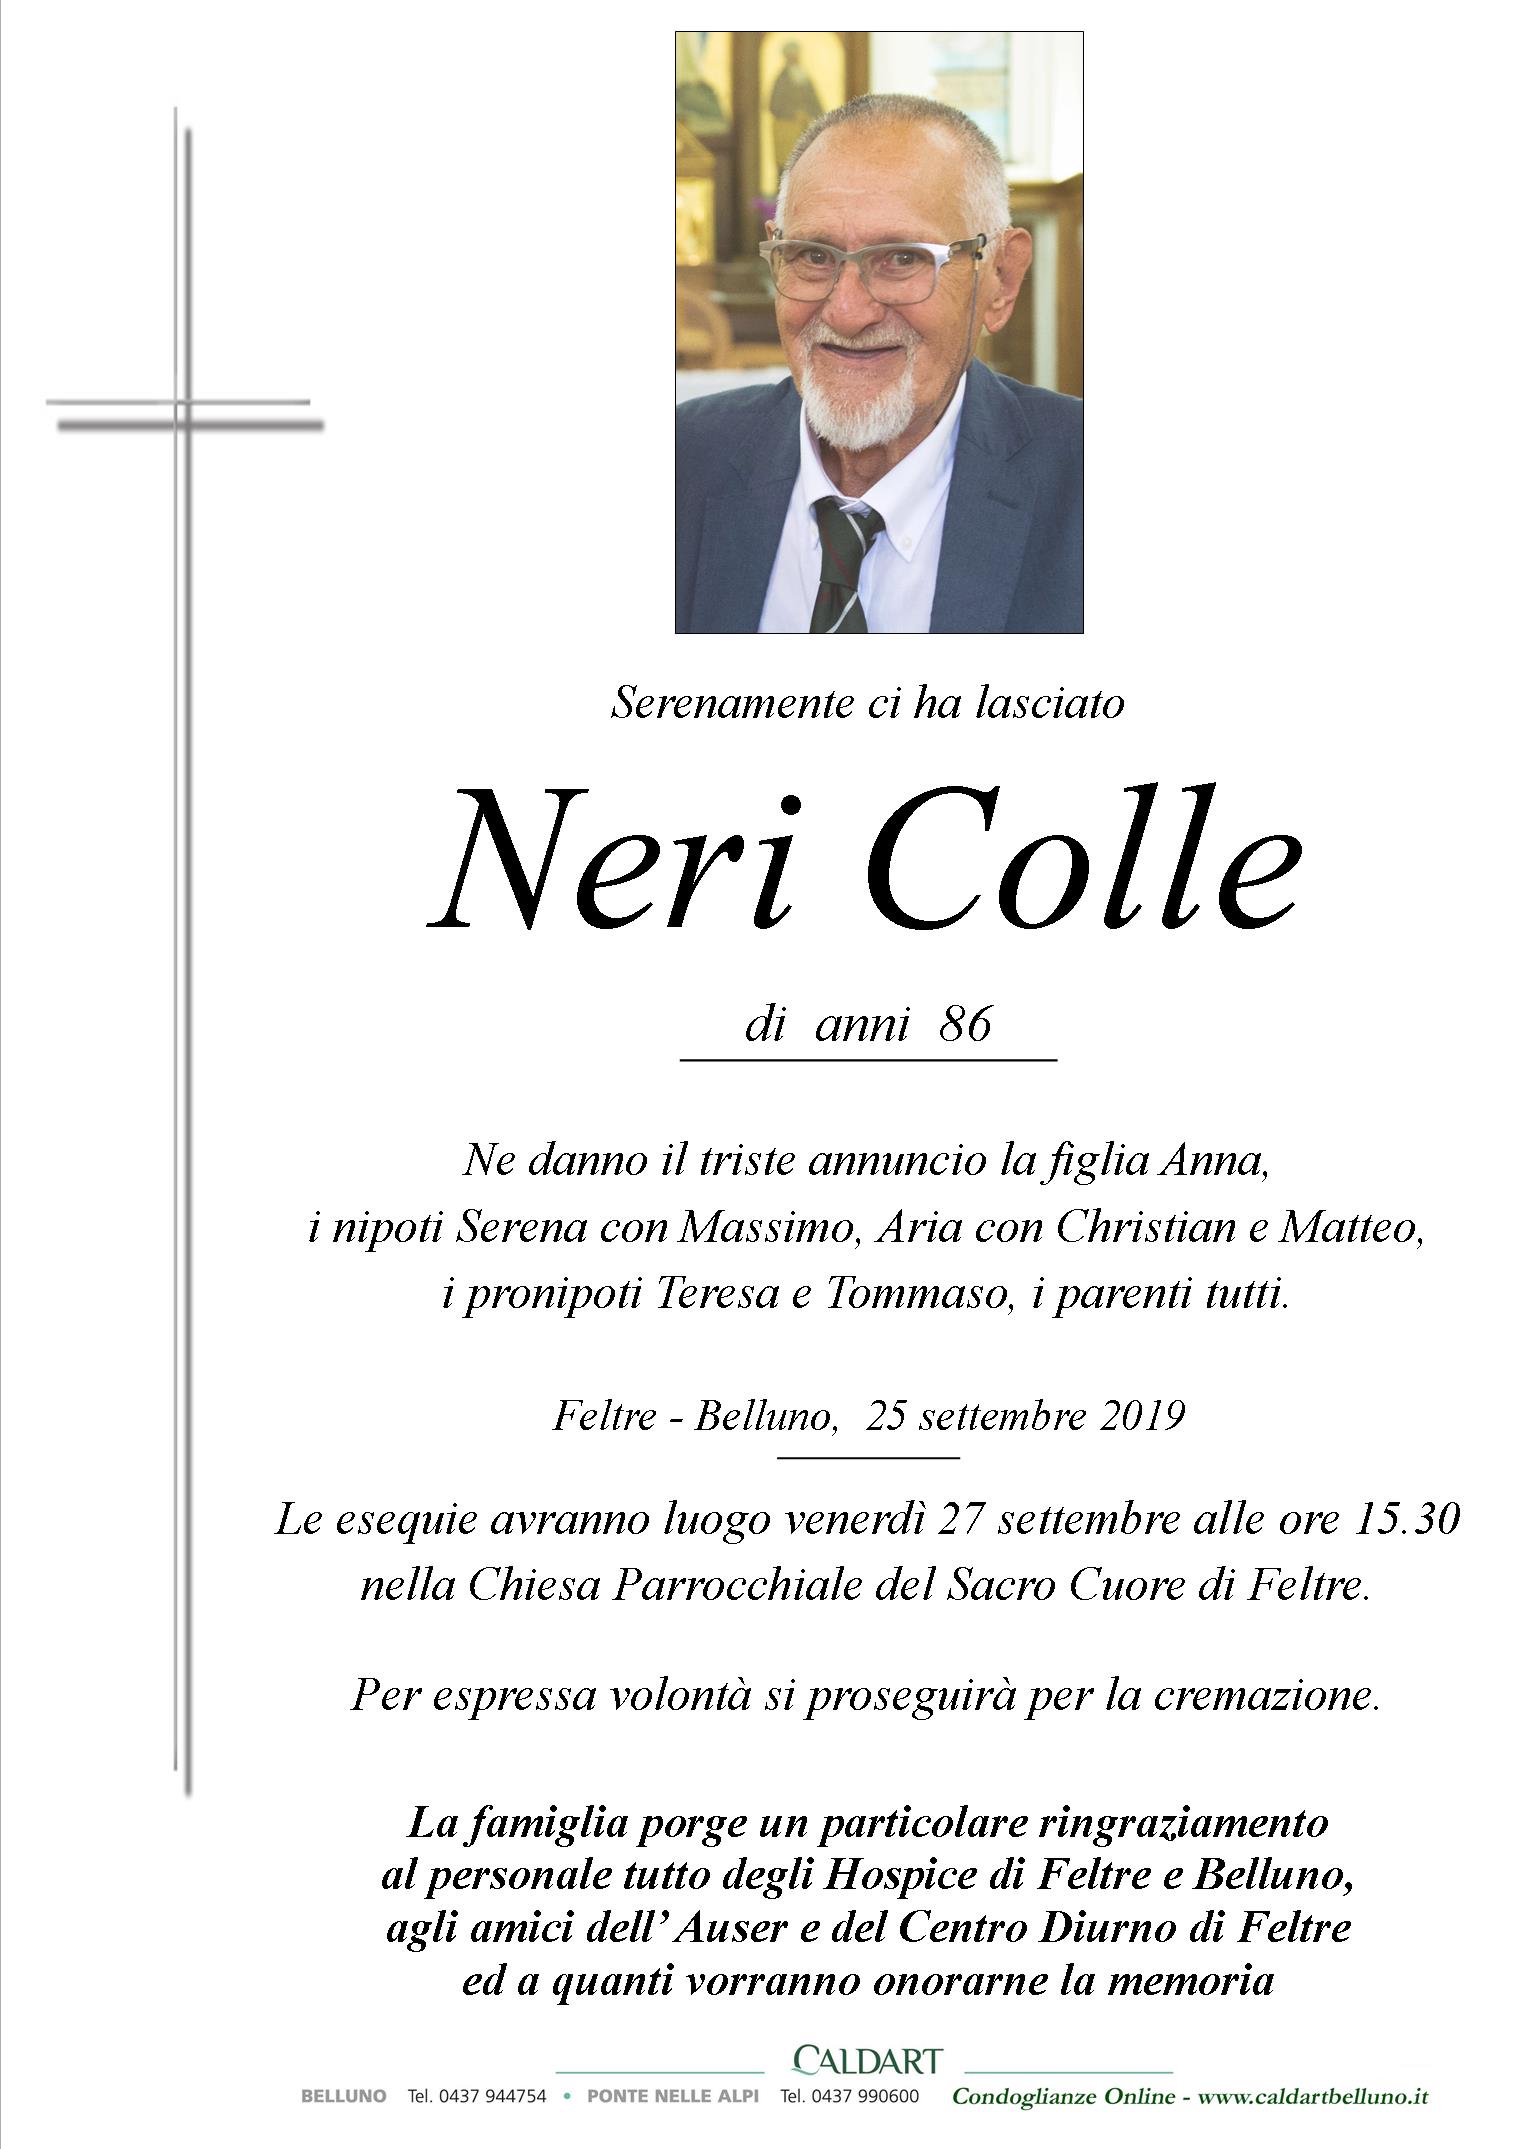 Colle Neri